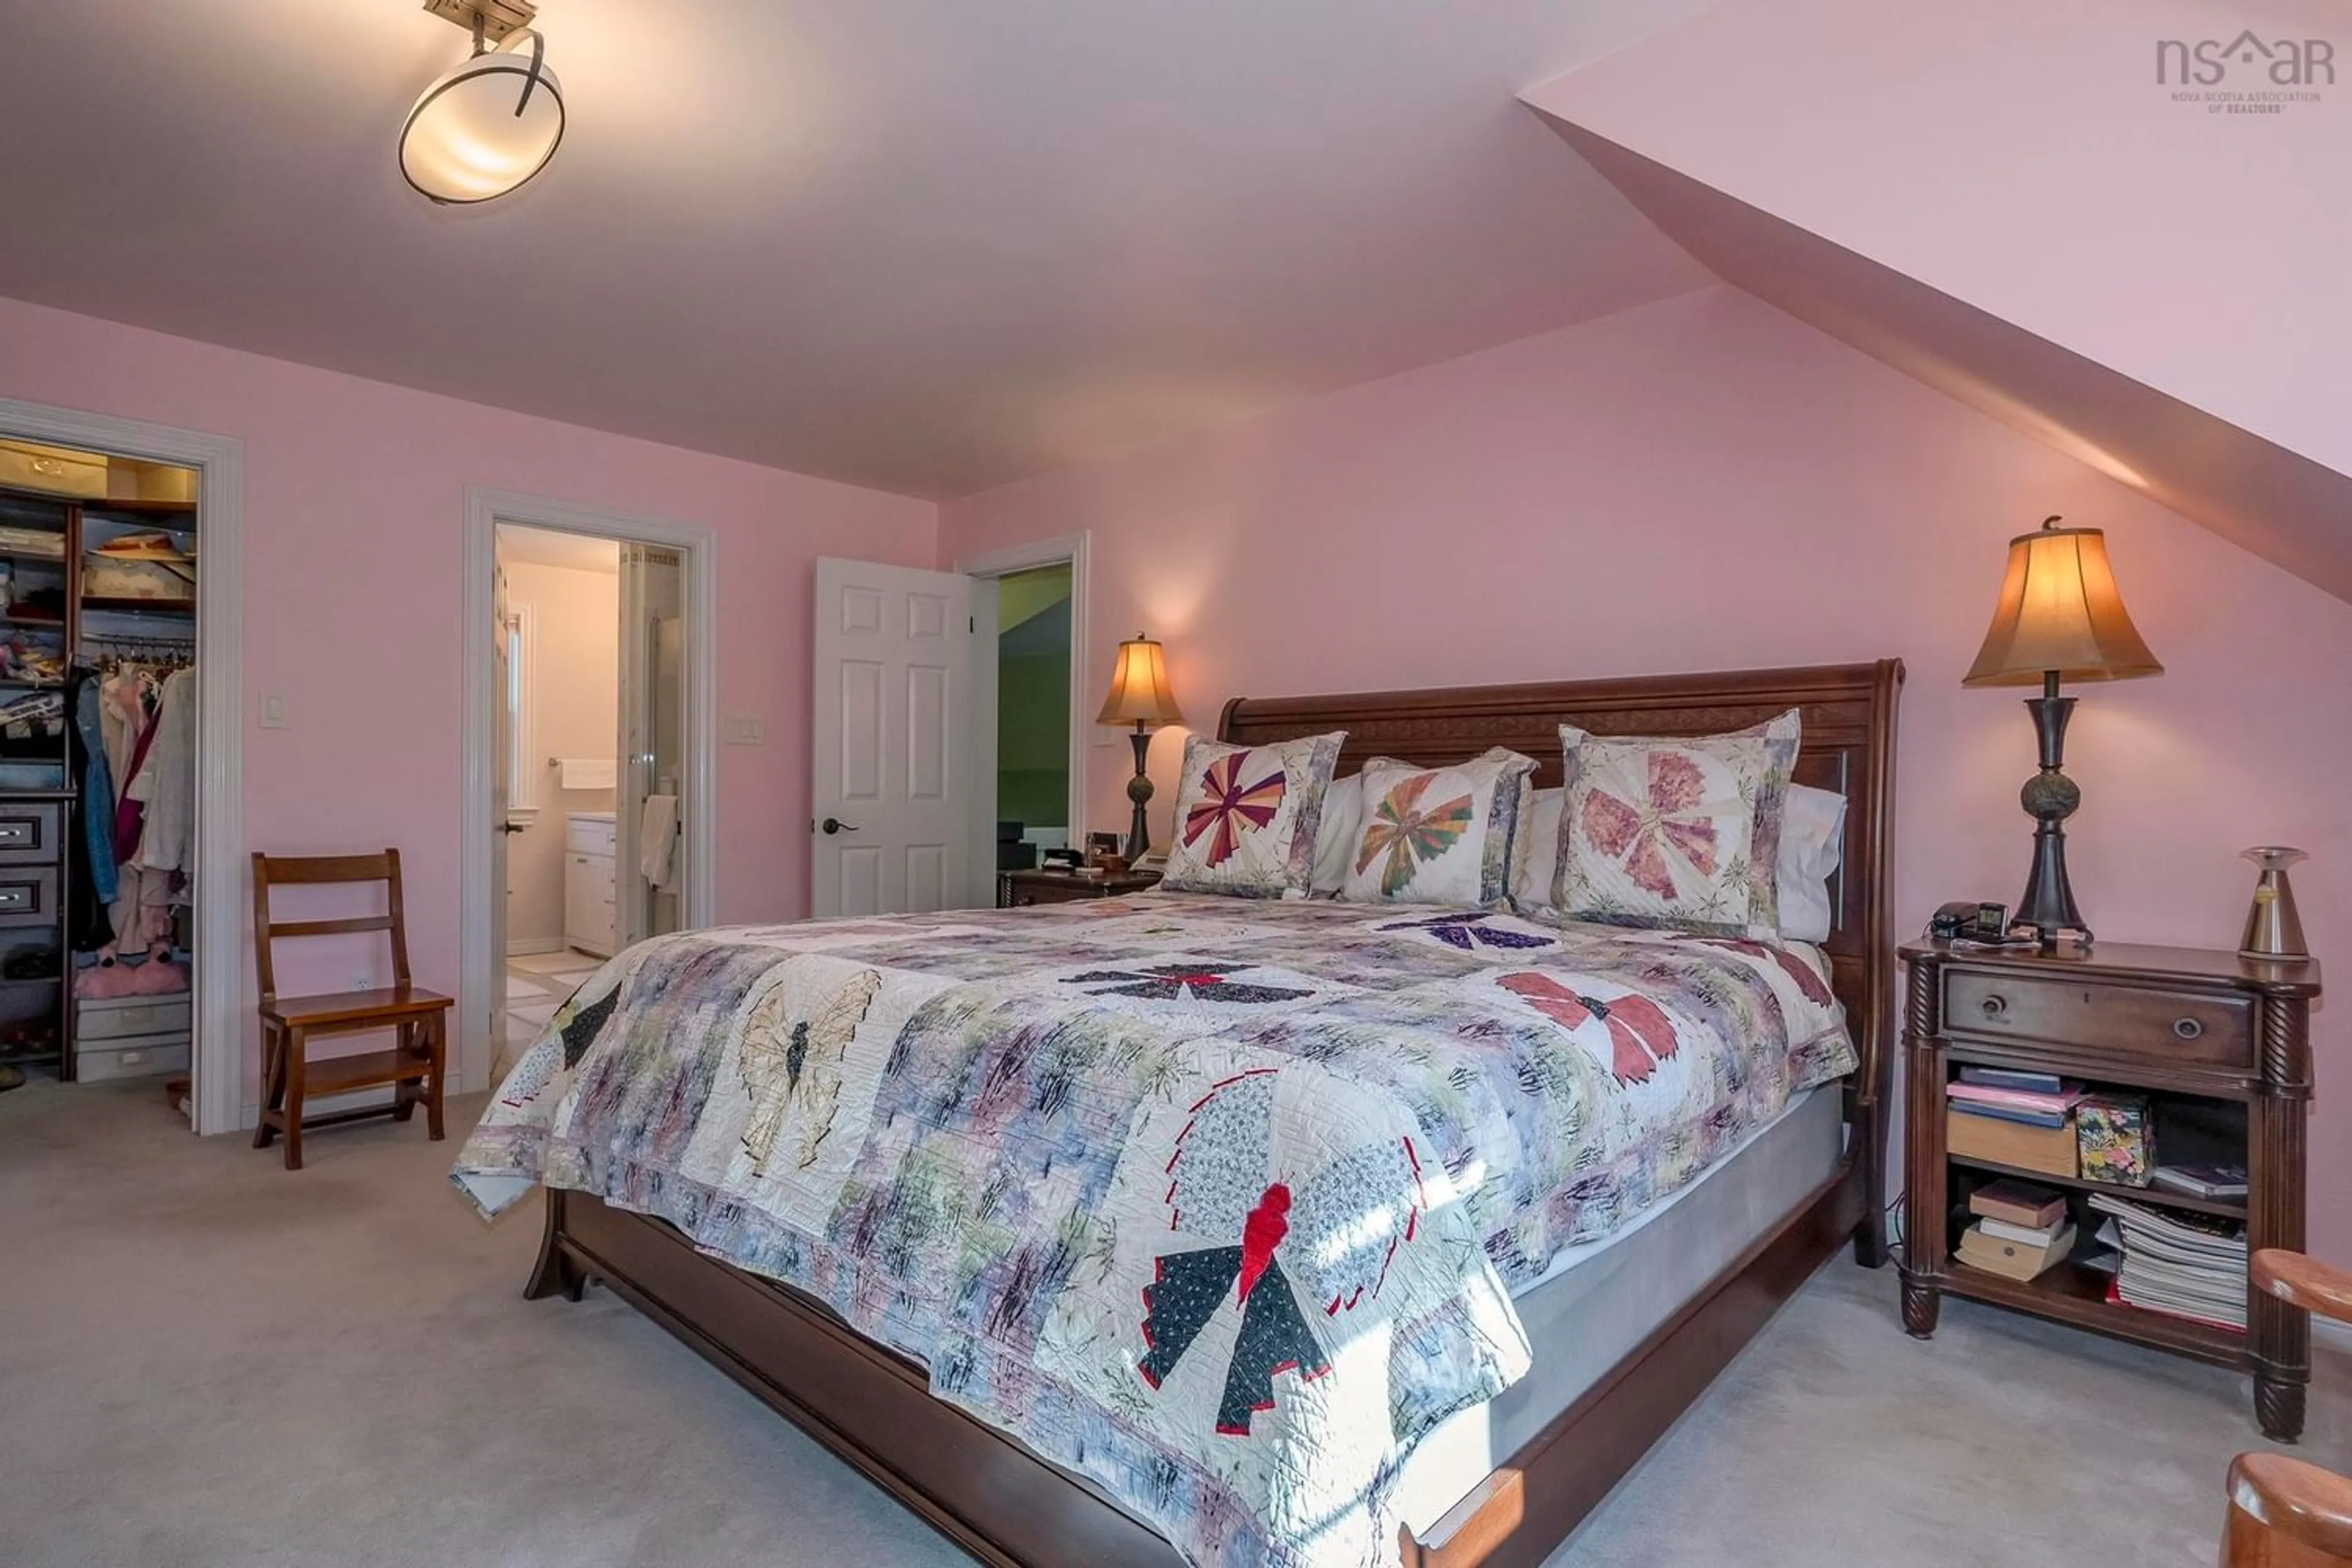 Bedroom for 112 Terra Nova Dr, Kentville Nova Scotia B4N 5G9